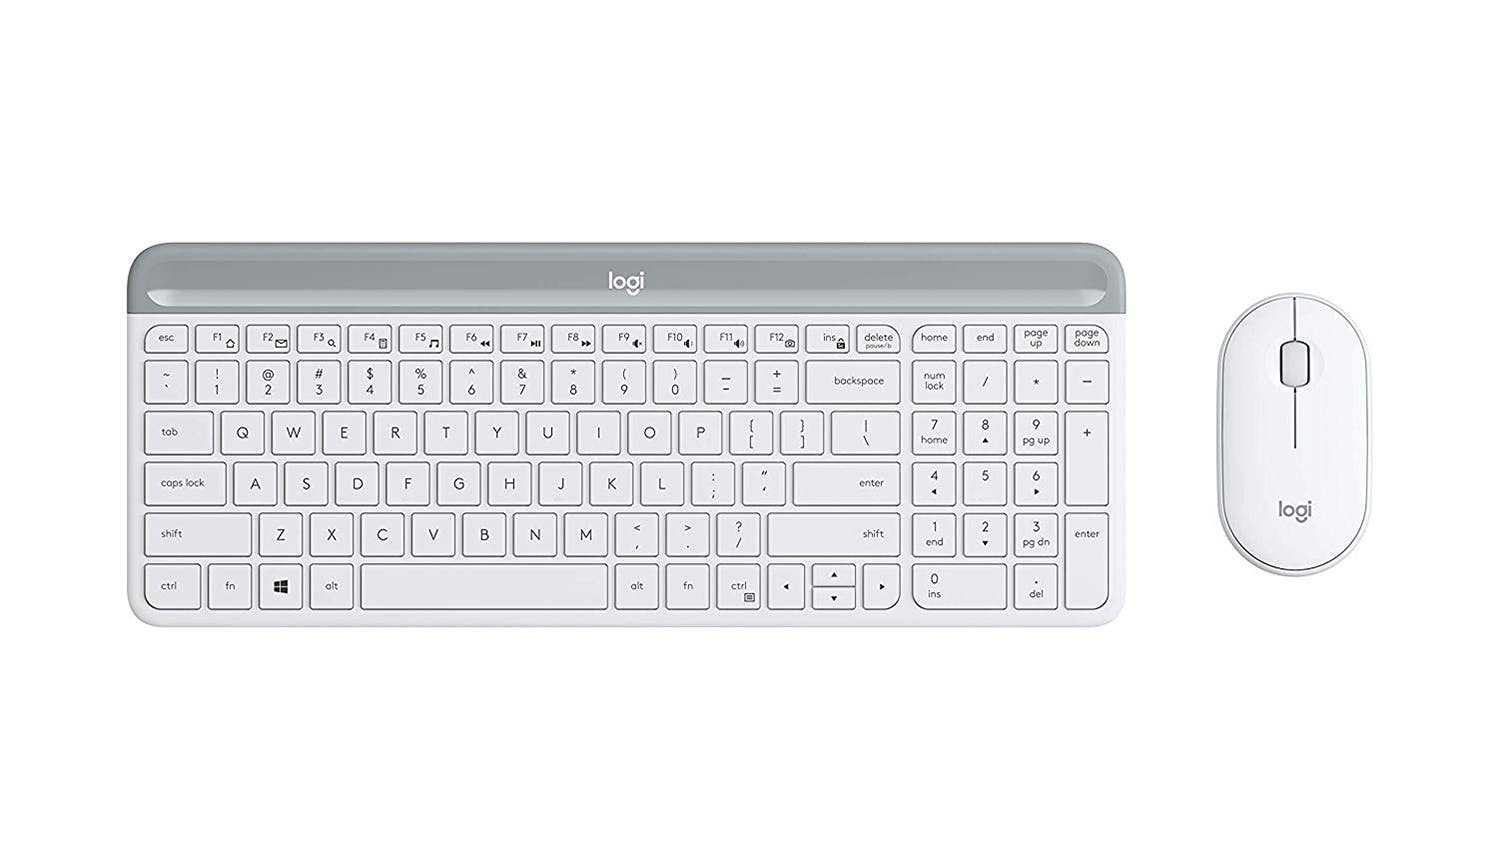 Топ-10 лучшая беспроводная клавиатура и мышь: рейтинг, как выбрать, отзывы, характеристики